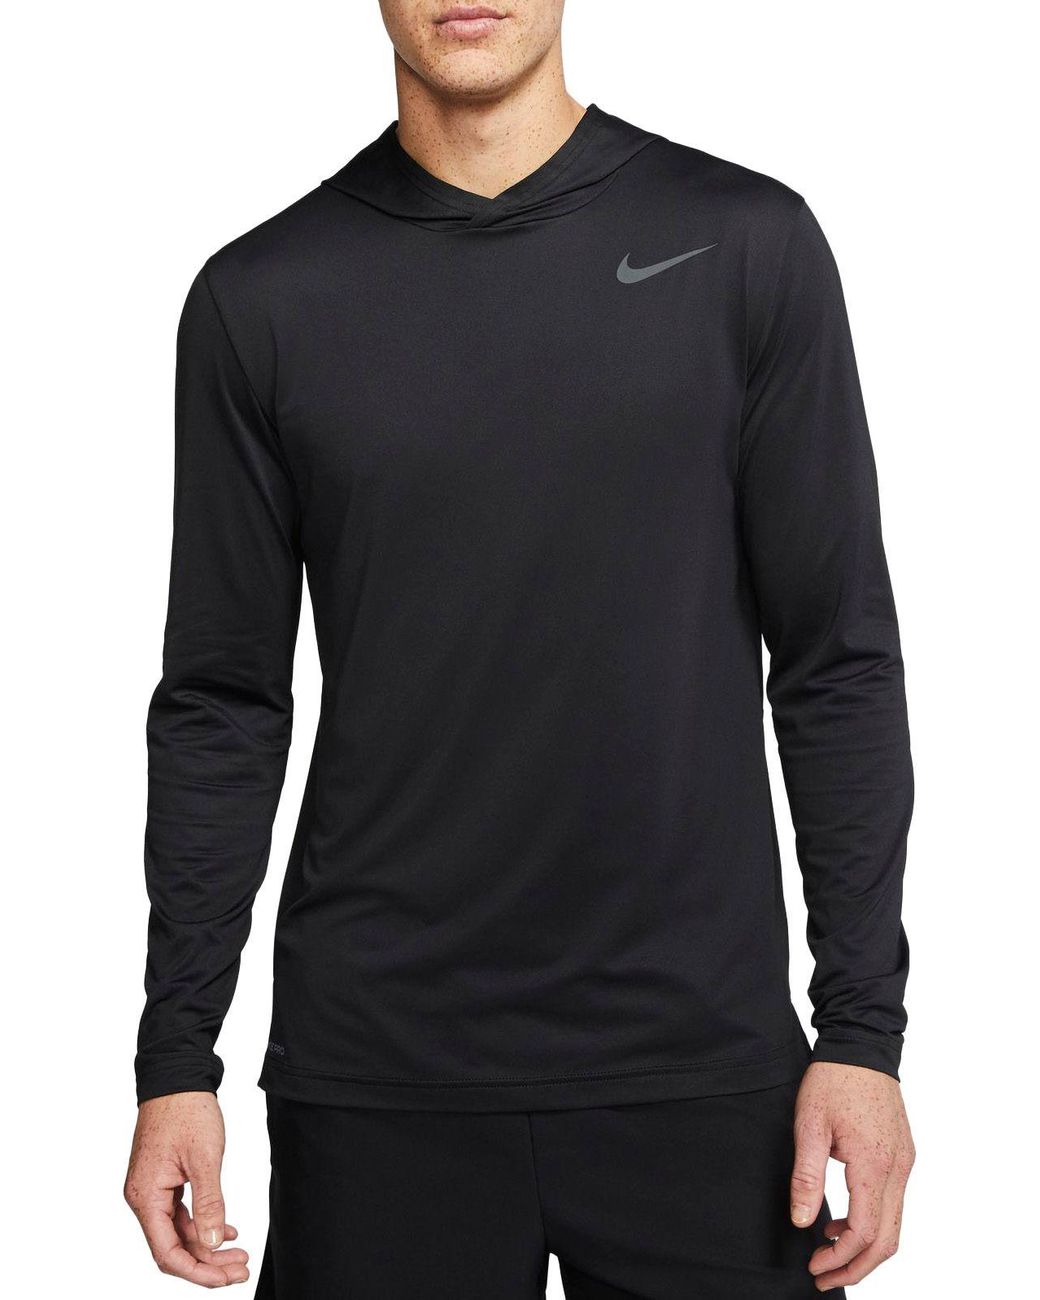 Nike Hyper Dry Hooded Long Sleeve Shirt in Black/White (Black) for Men ...